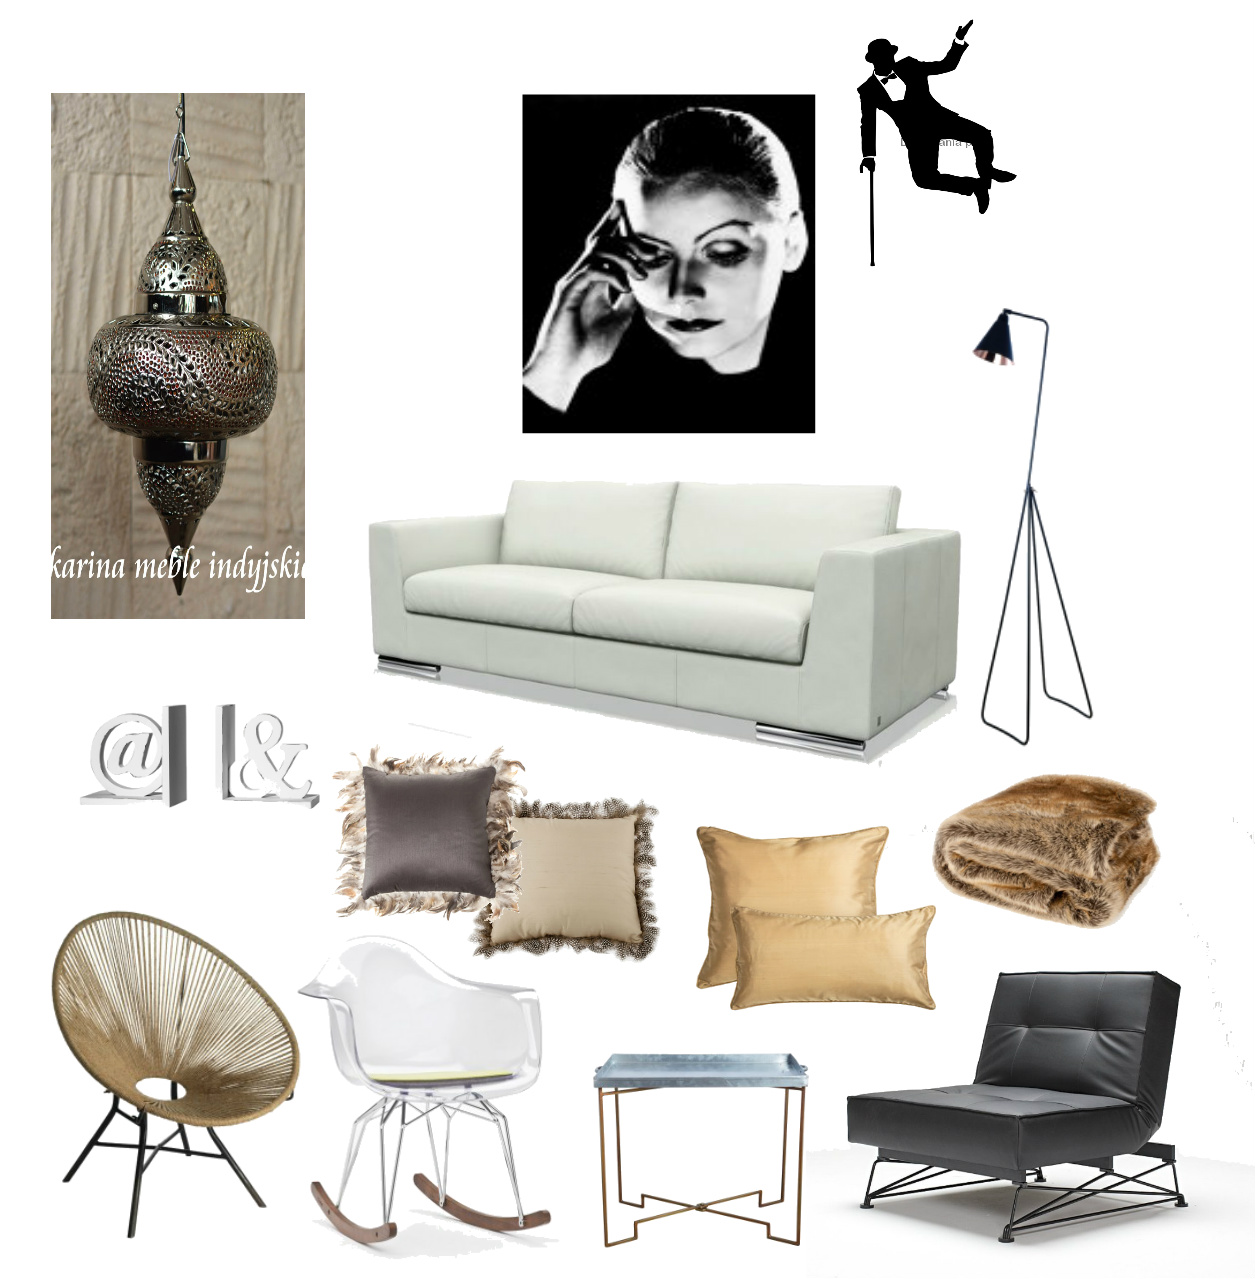 marokańska lampa,marokański lampion,fotografia Greta Garbo,naklejka czarno-białą,nowoczesna sofa,czarna lampa podłogowa,nowoczesna lampa stojąca,podpórki na książki,poduszki z piórkami,futrzany pled,brązowy koc,nowoczesne fotele,krzesło na płozach,pleciony fotel,skandynawskie meble,czarny fotel,nowoczesny fotel,stolik kawowy z tacą